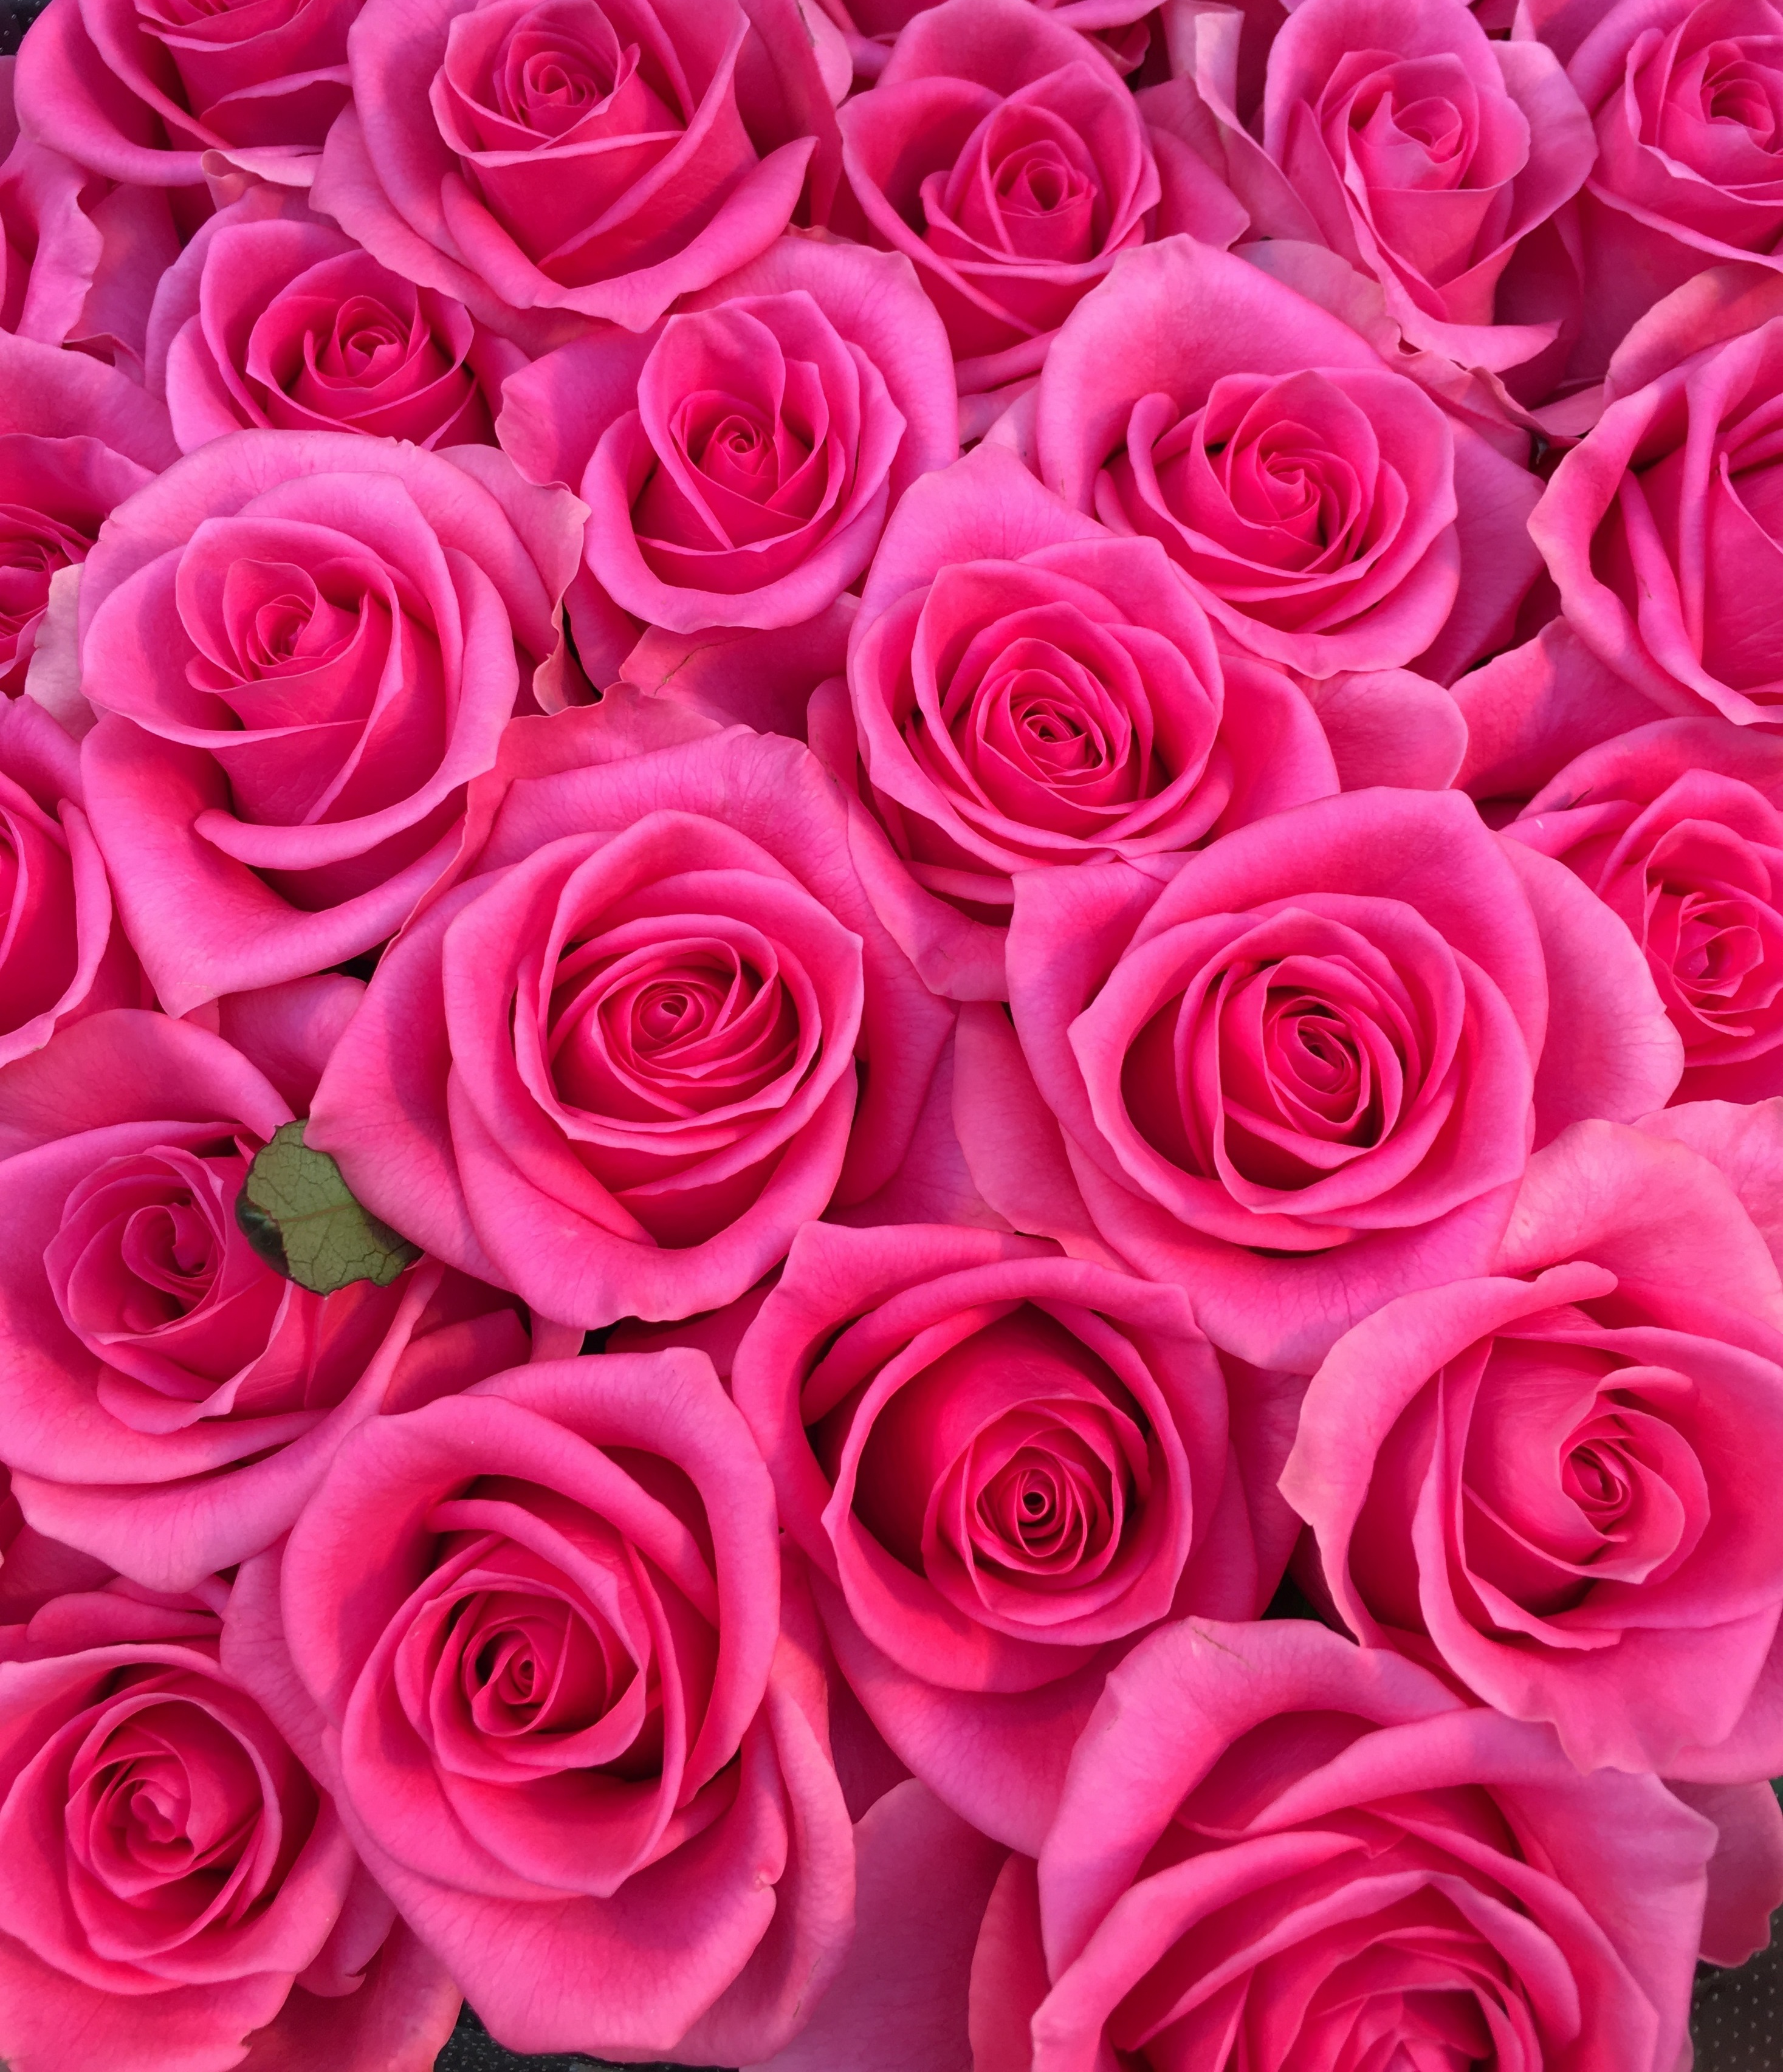 花屋 花家shinyoshi １００本バラ 大輪ピンクバラ プロポーズの花束 記念日の花束 結婚記念日の花束 特別な花束 １００本 １０８本 バラ ローズ 薔薇 Rose Rose Roses Roses